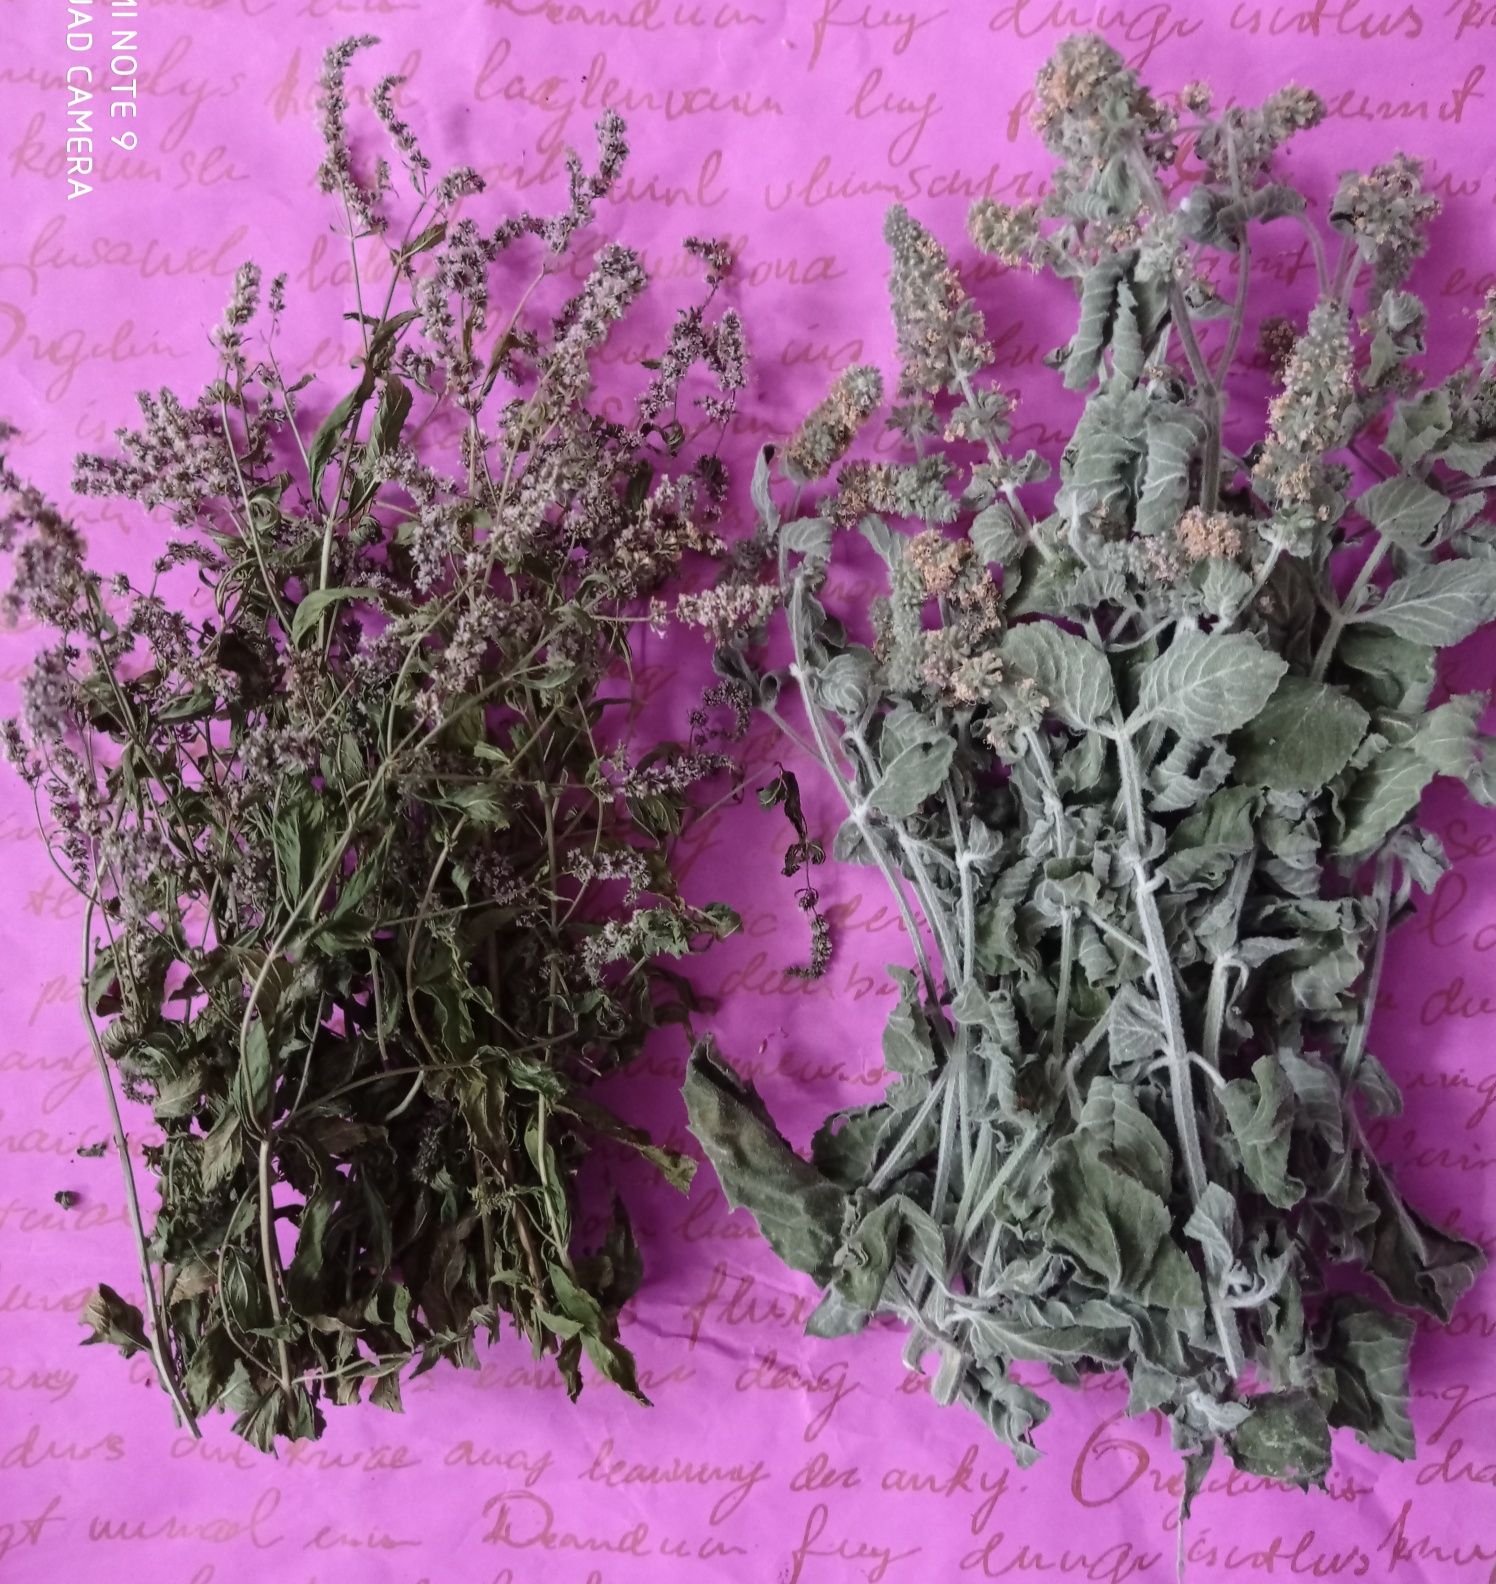 Травы для чая, лекарственные травы, мята, базилик